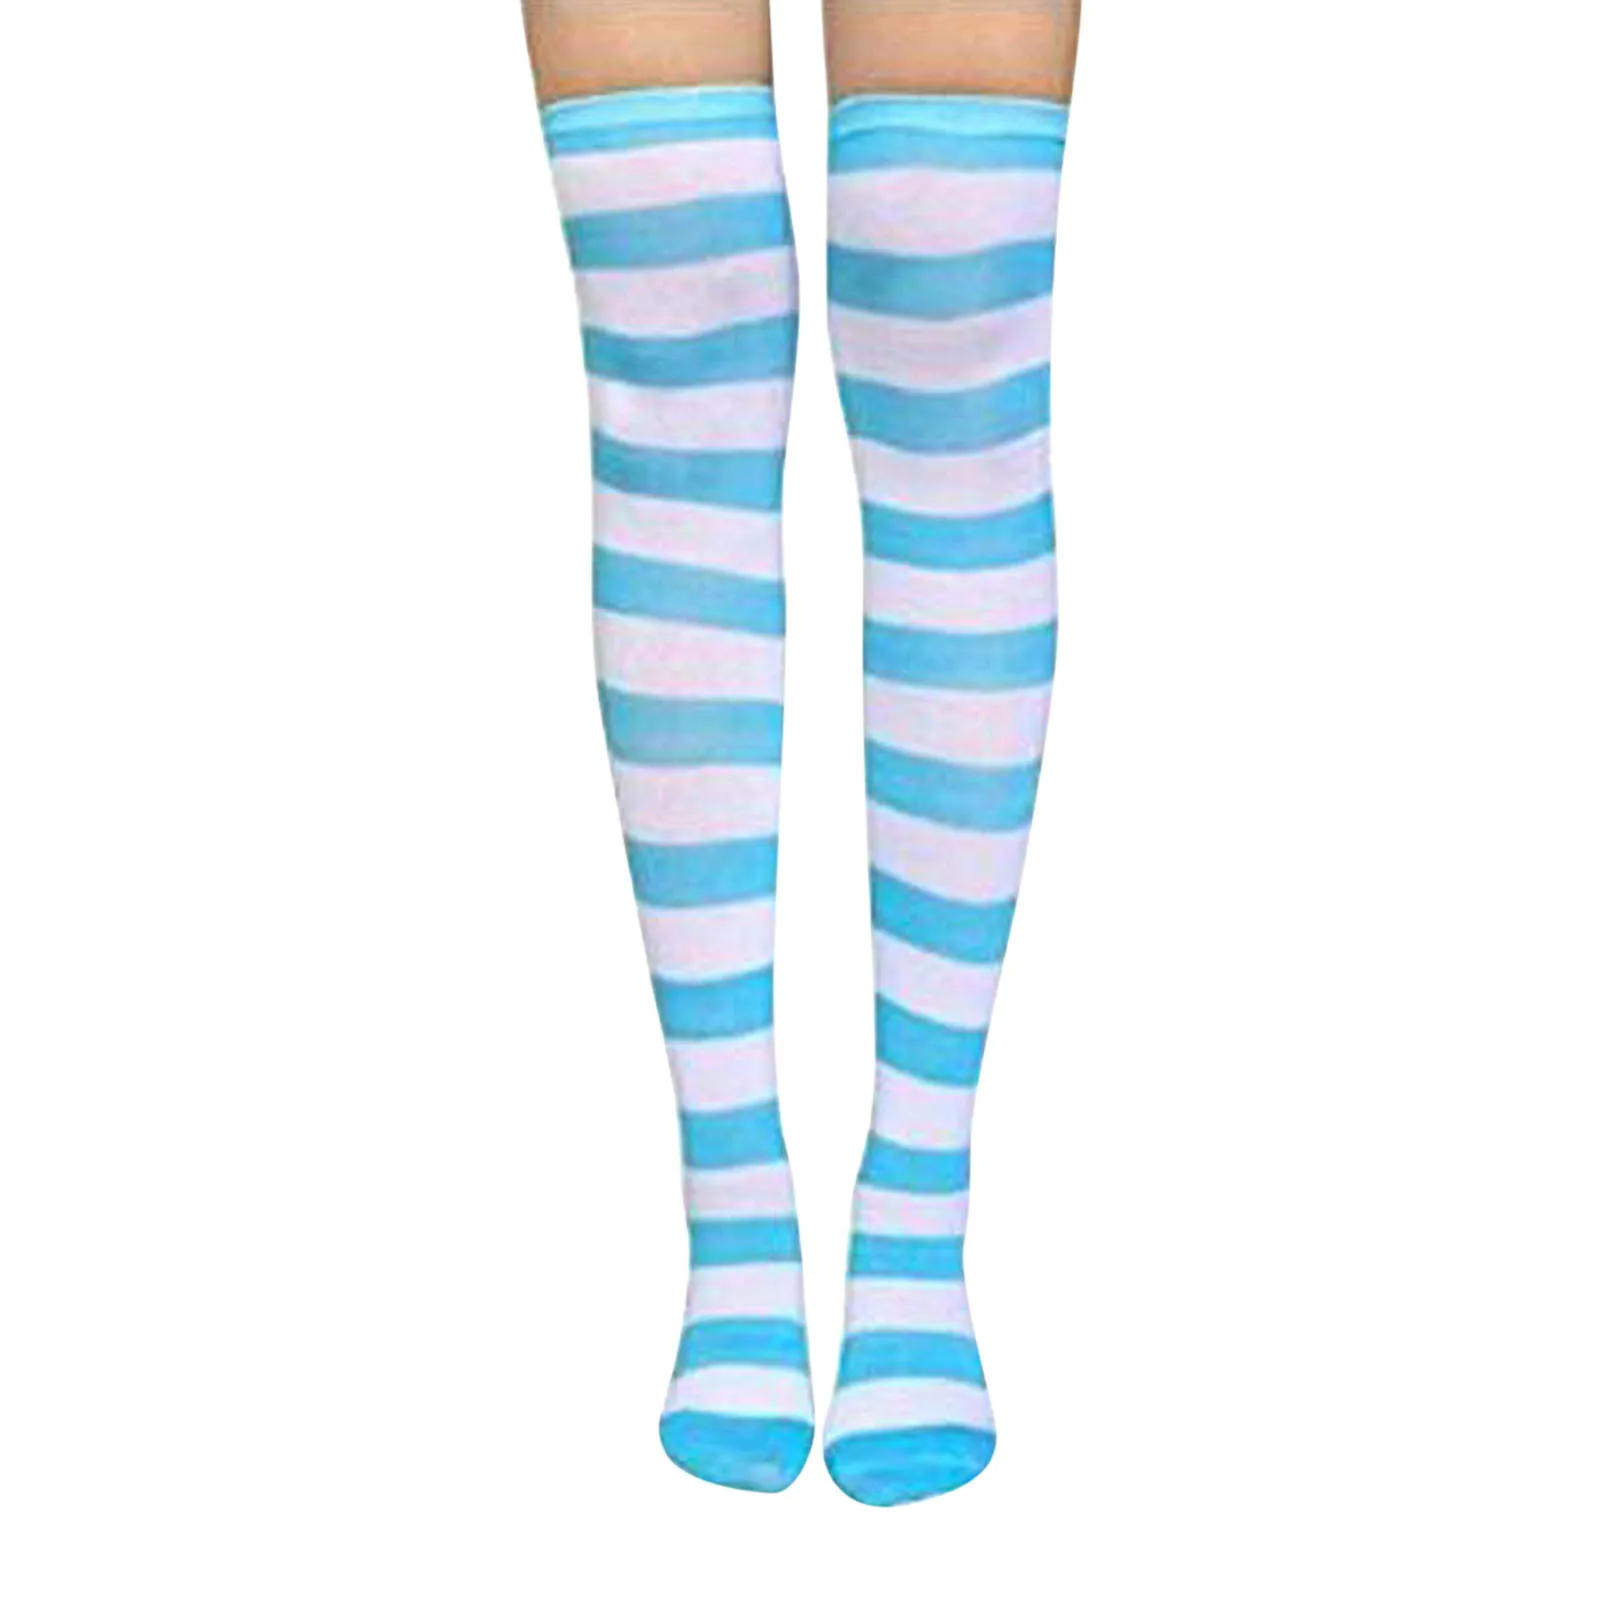 Фото Длинные милые обтягивающие аниме чулки выше колена в полоску розовые синие белые